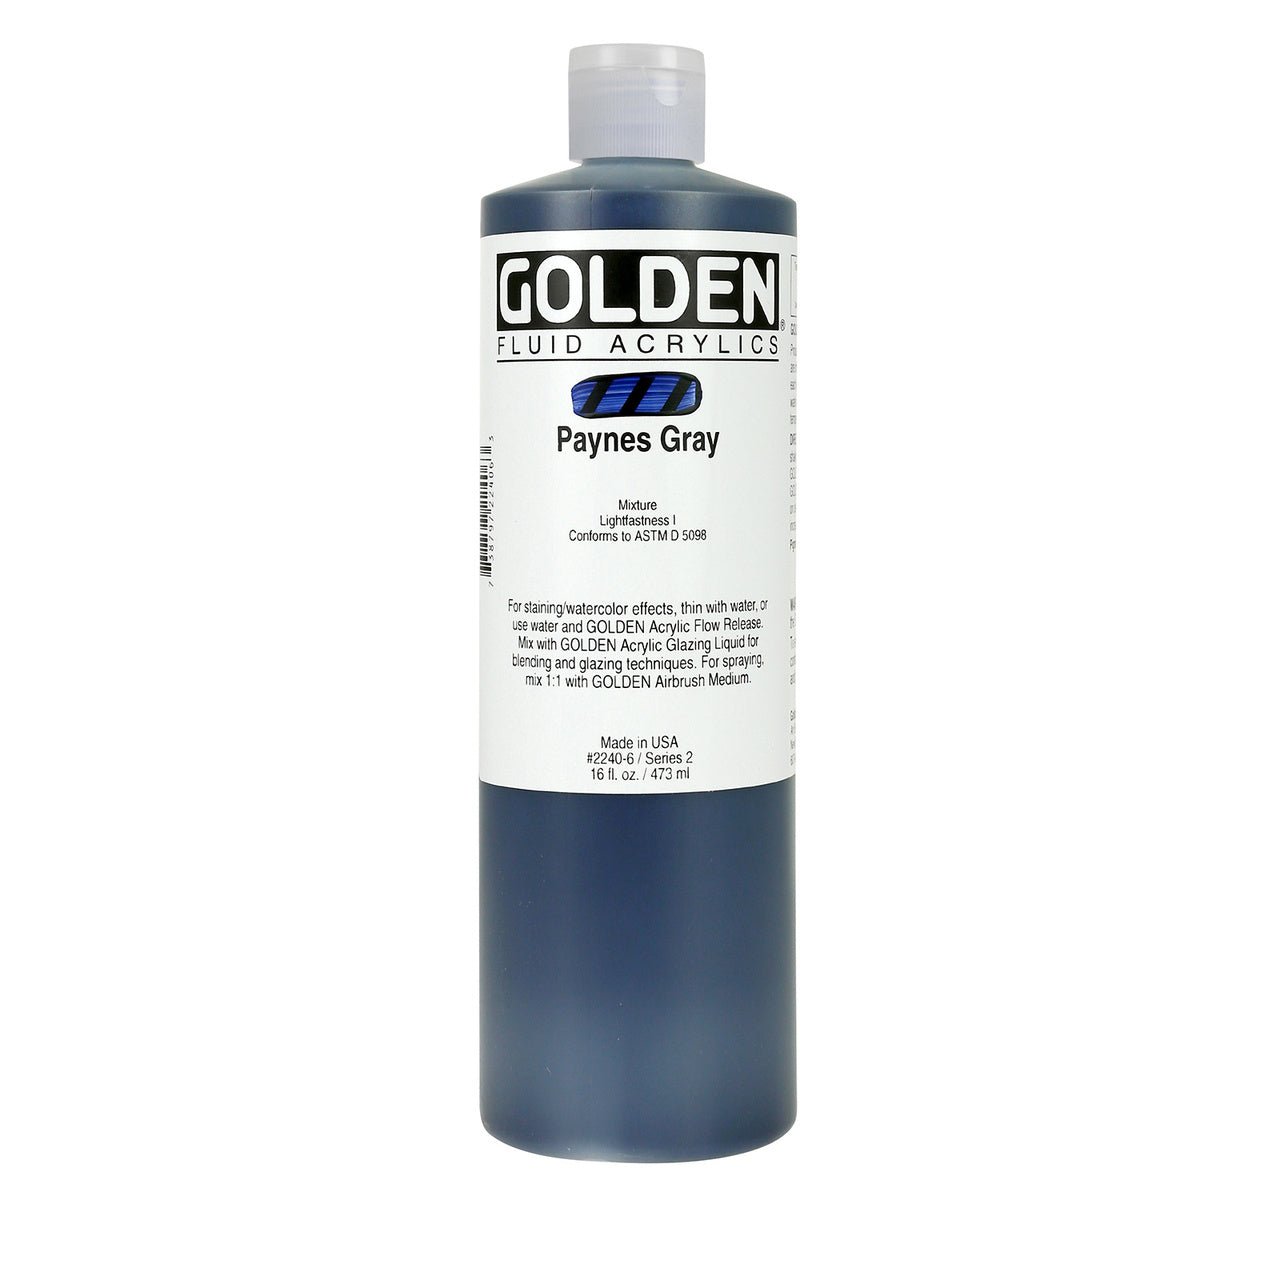 Golden Fluid Acrylic Paynes Gray 16 oz - merriartist.com